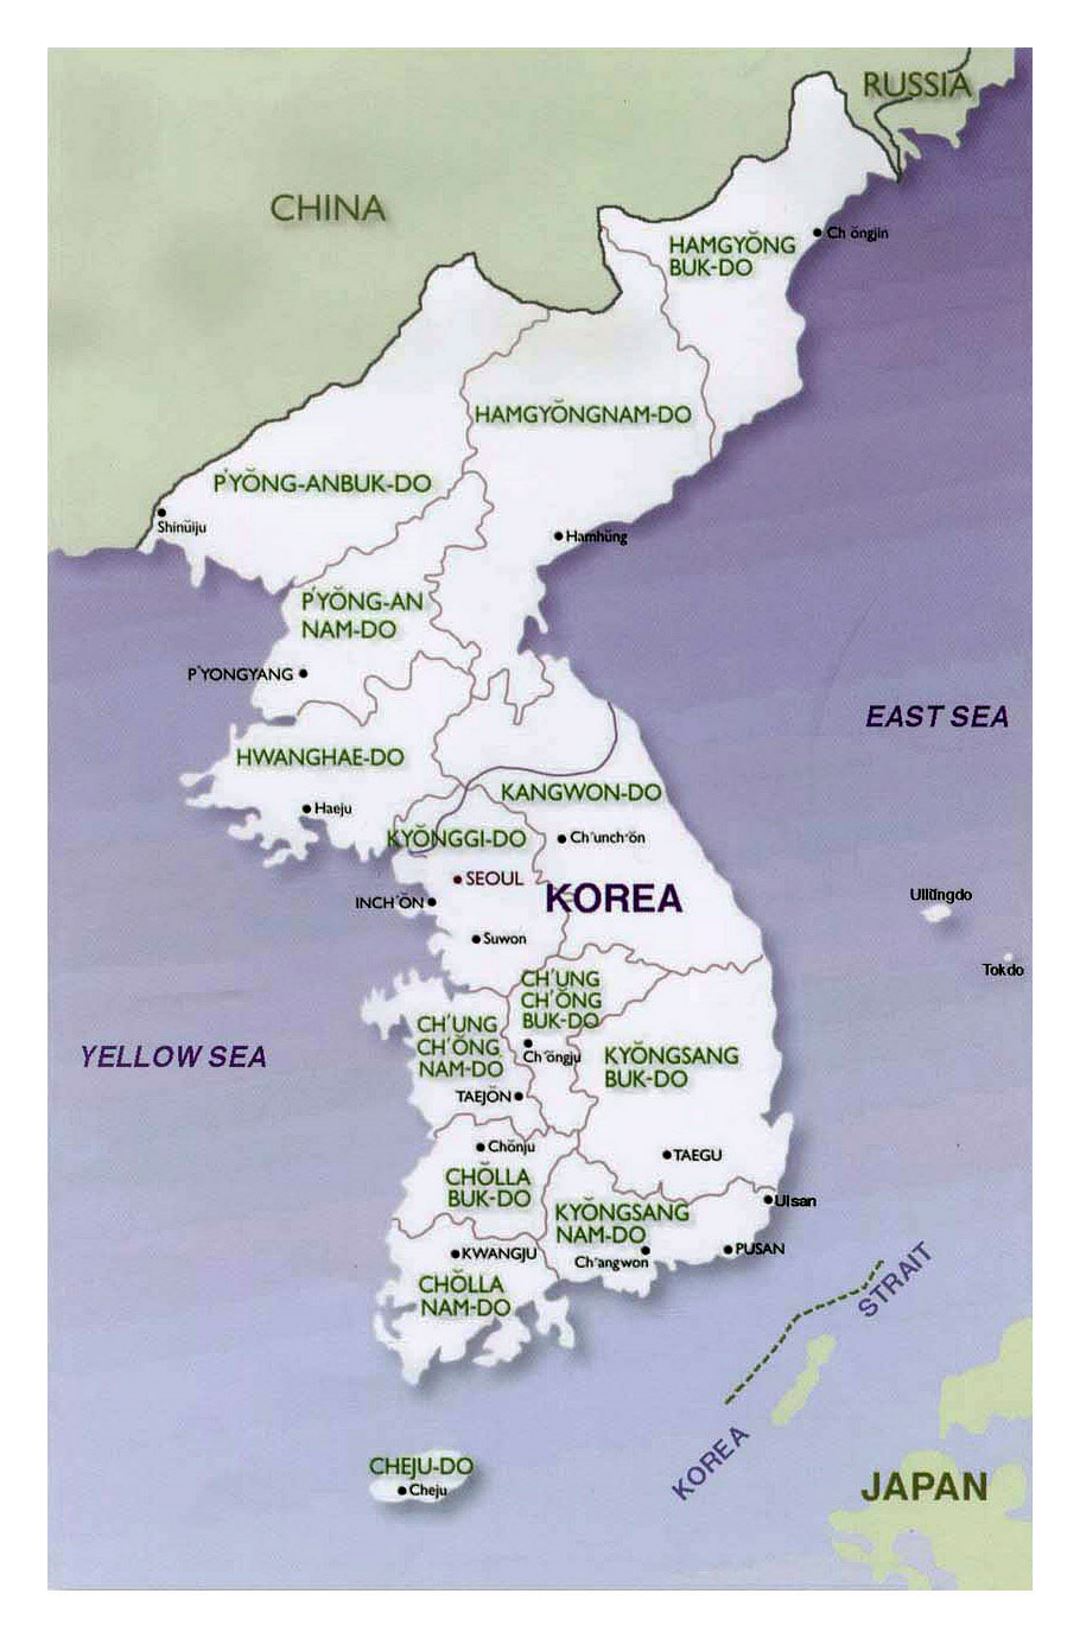 Mapa político y administrativo de la Península de Corea - 2001